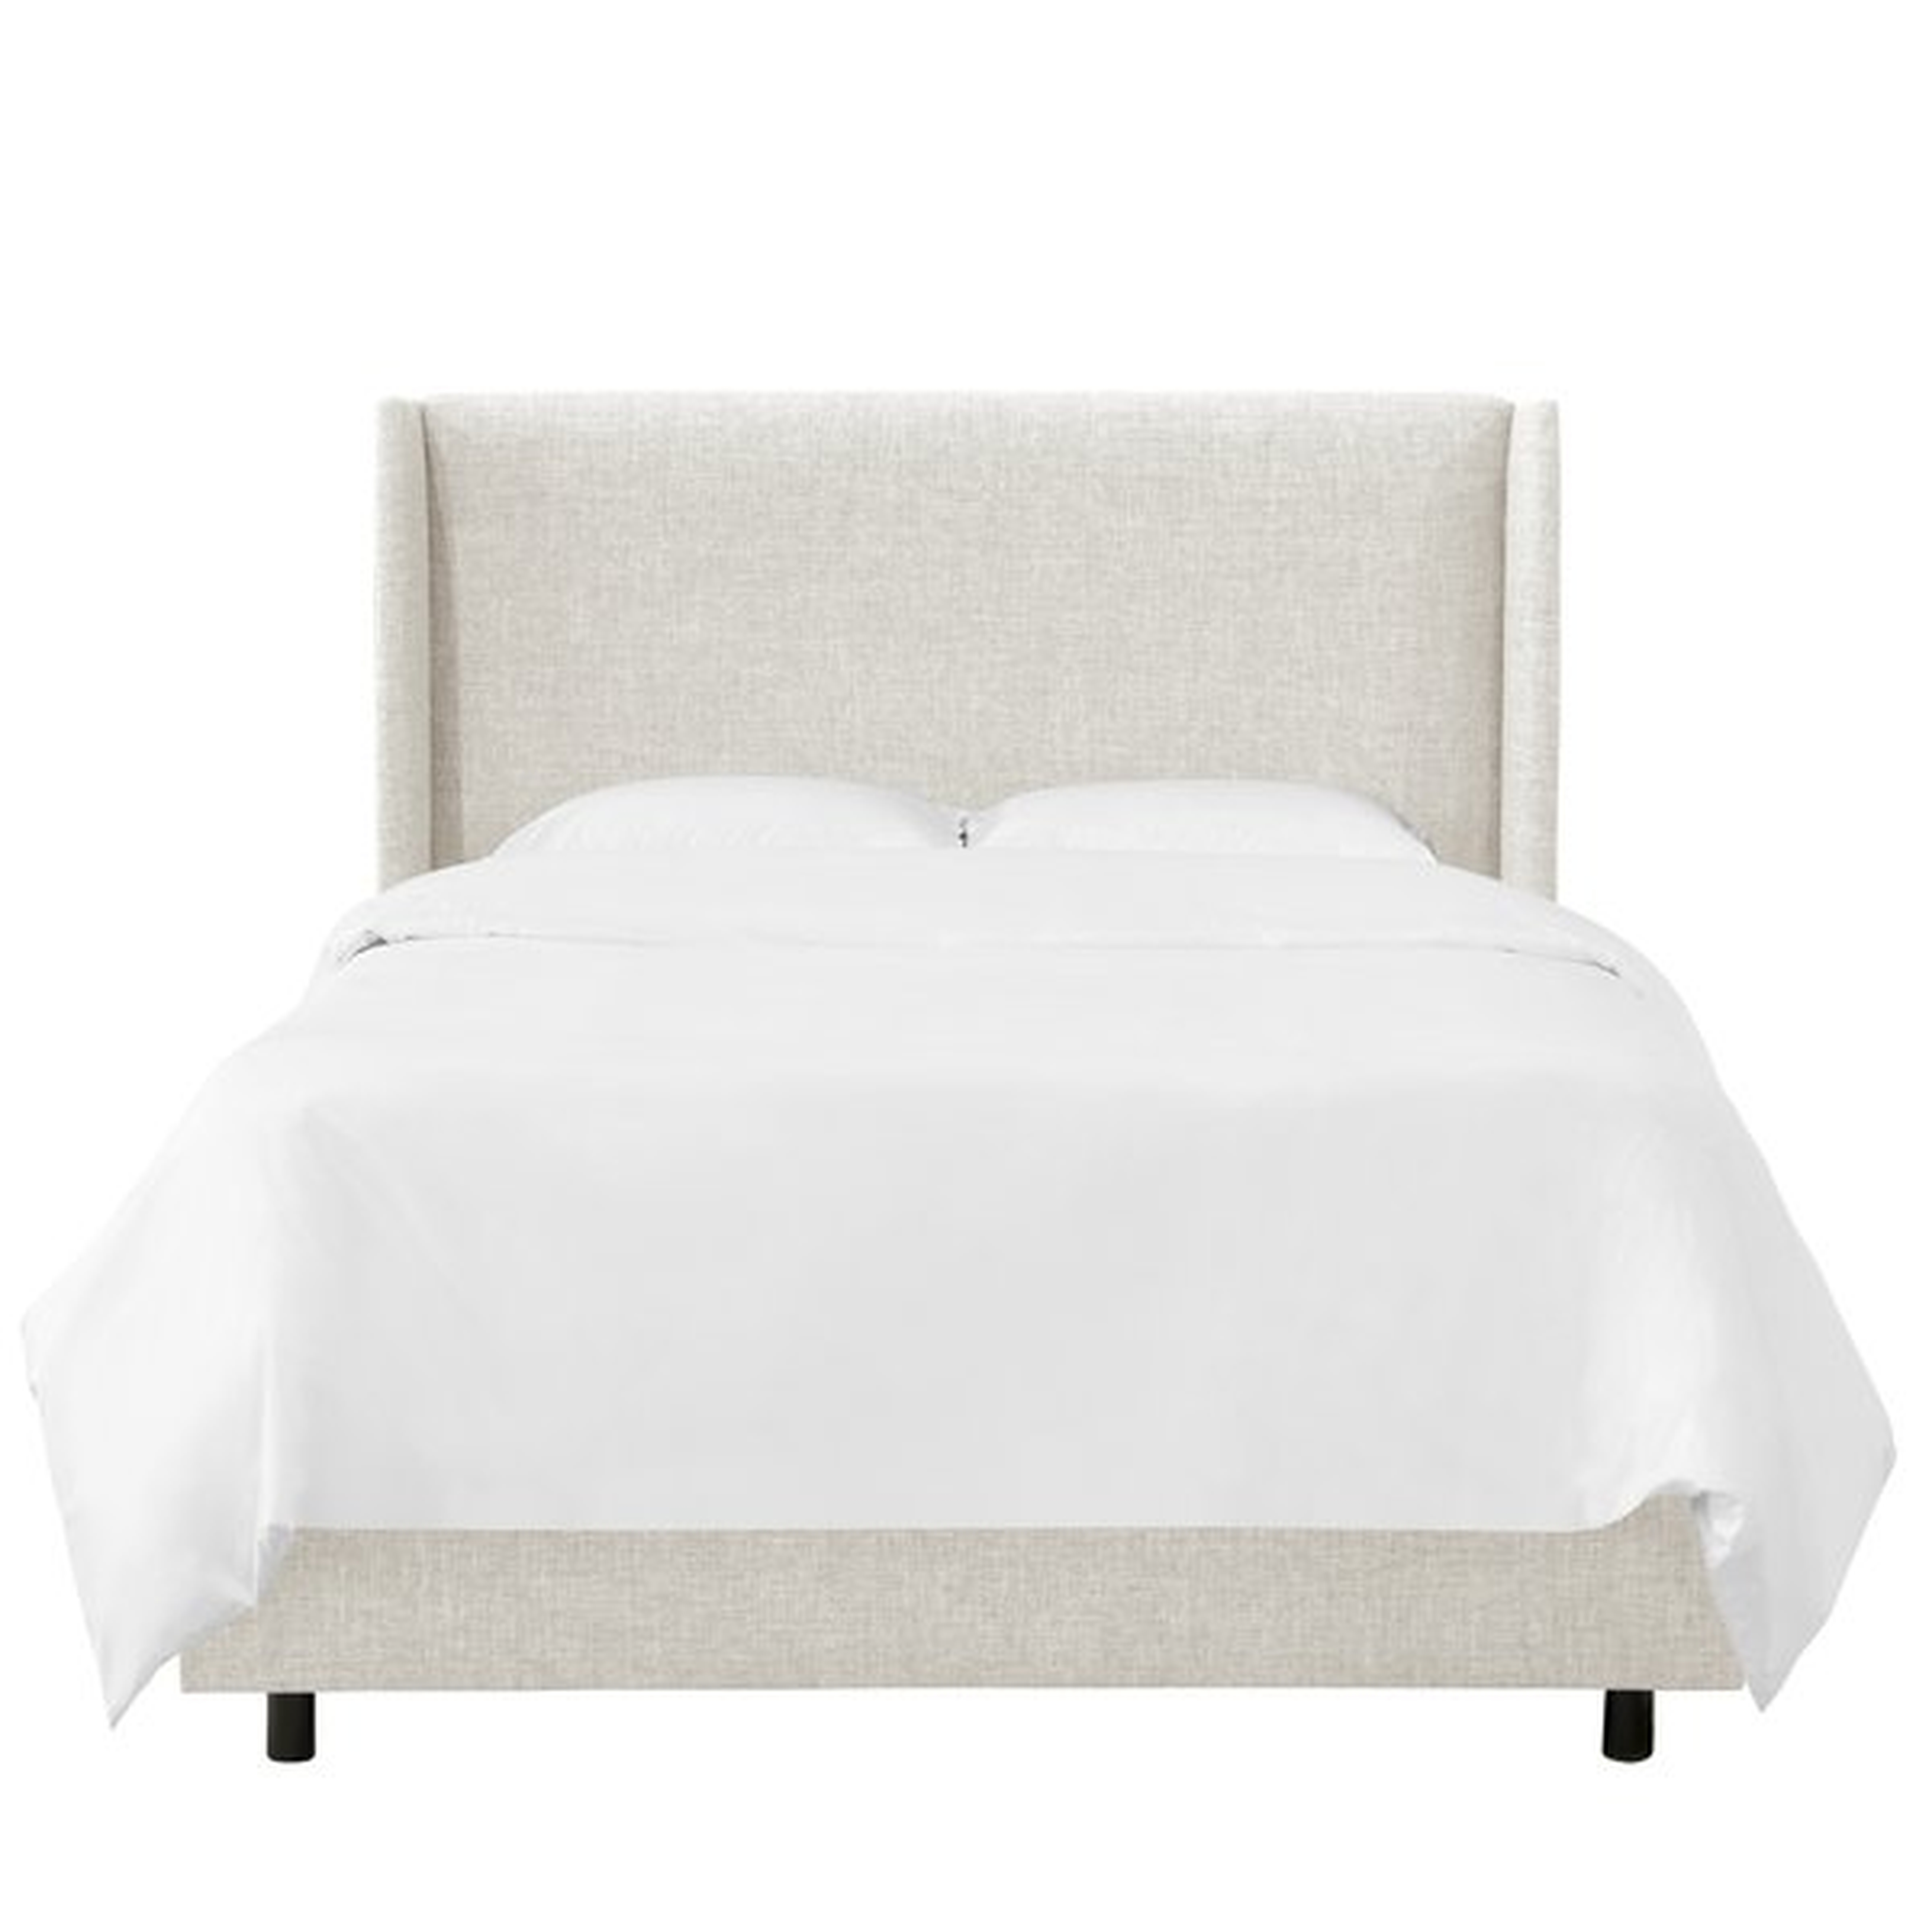 Alrai Upholstered Standard Bed - King - Zuma White - Wayfair